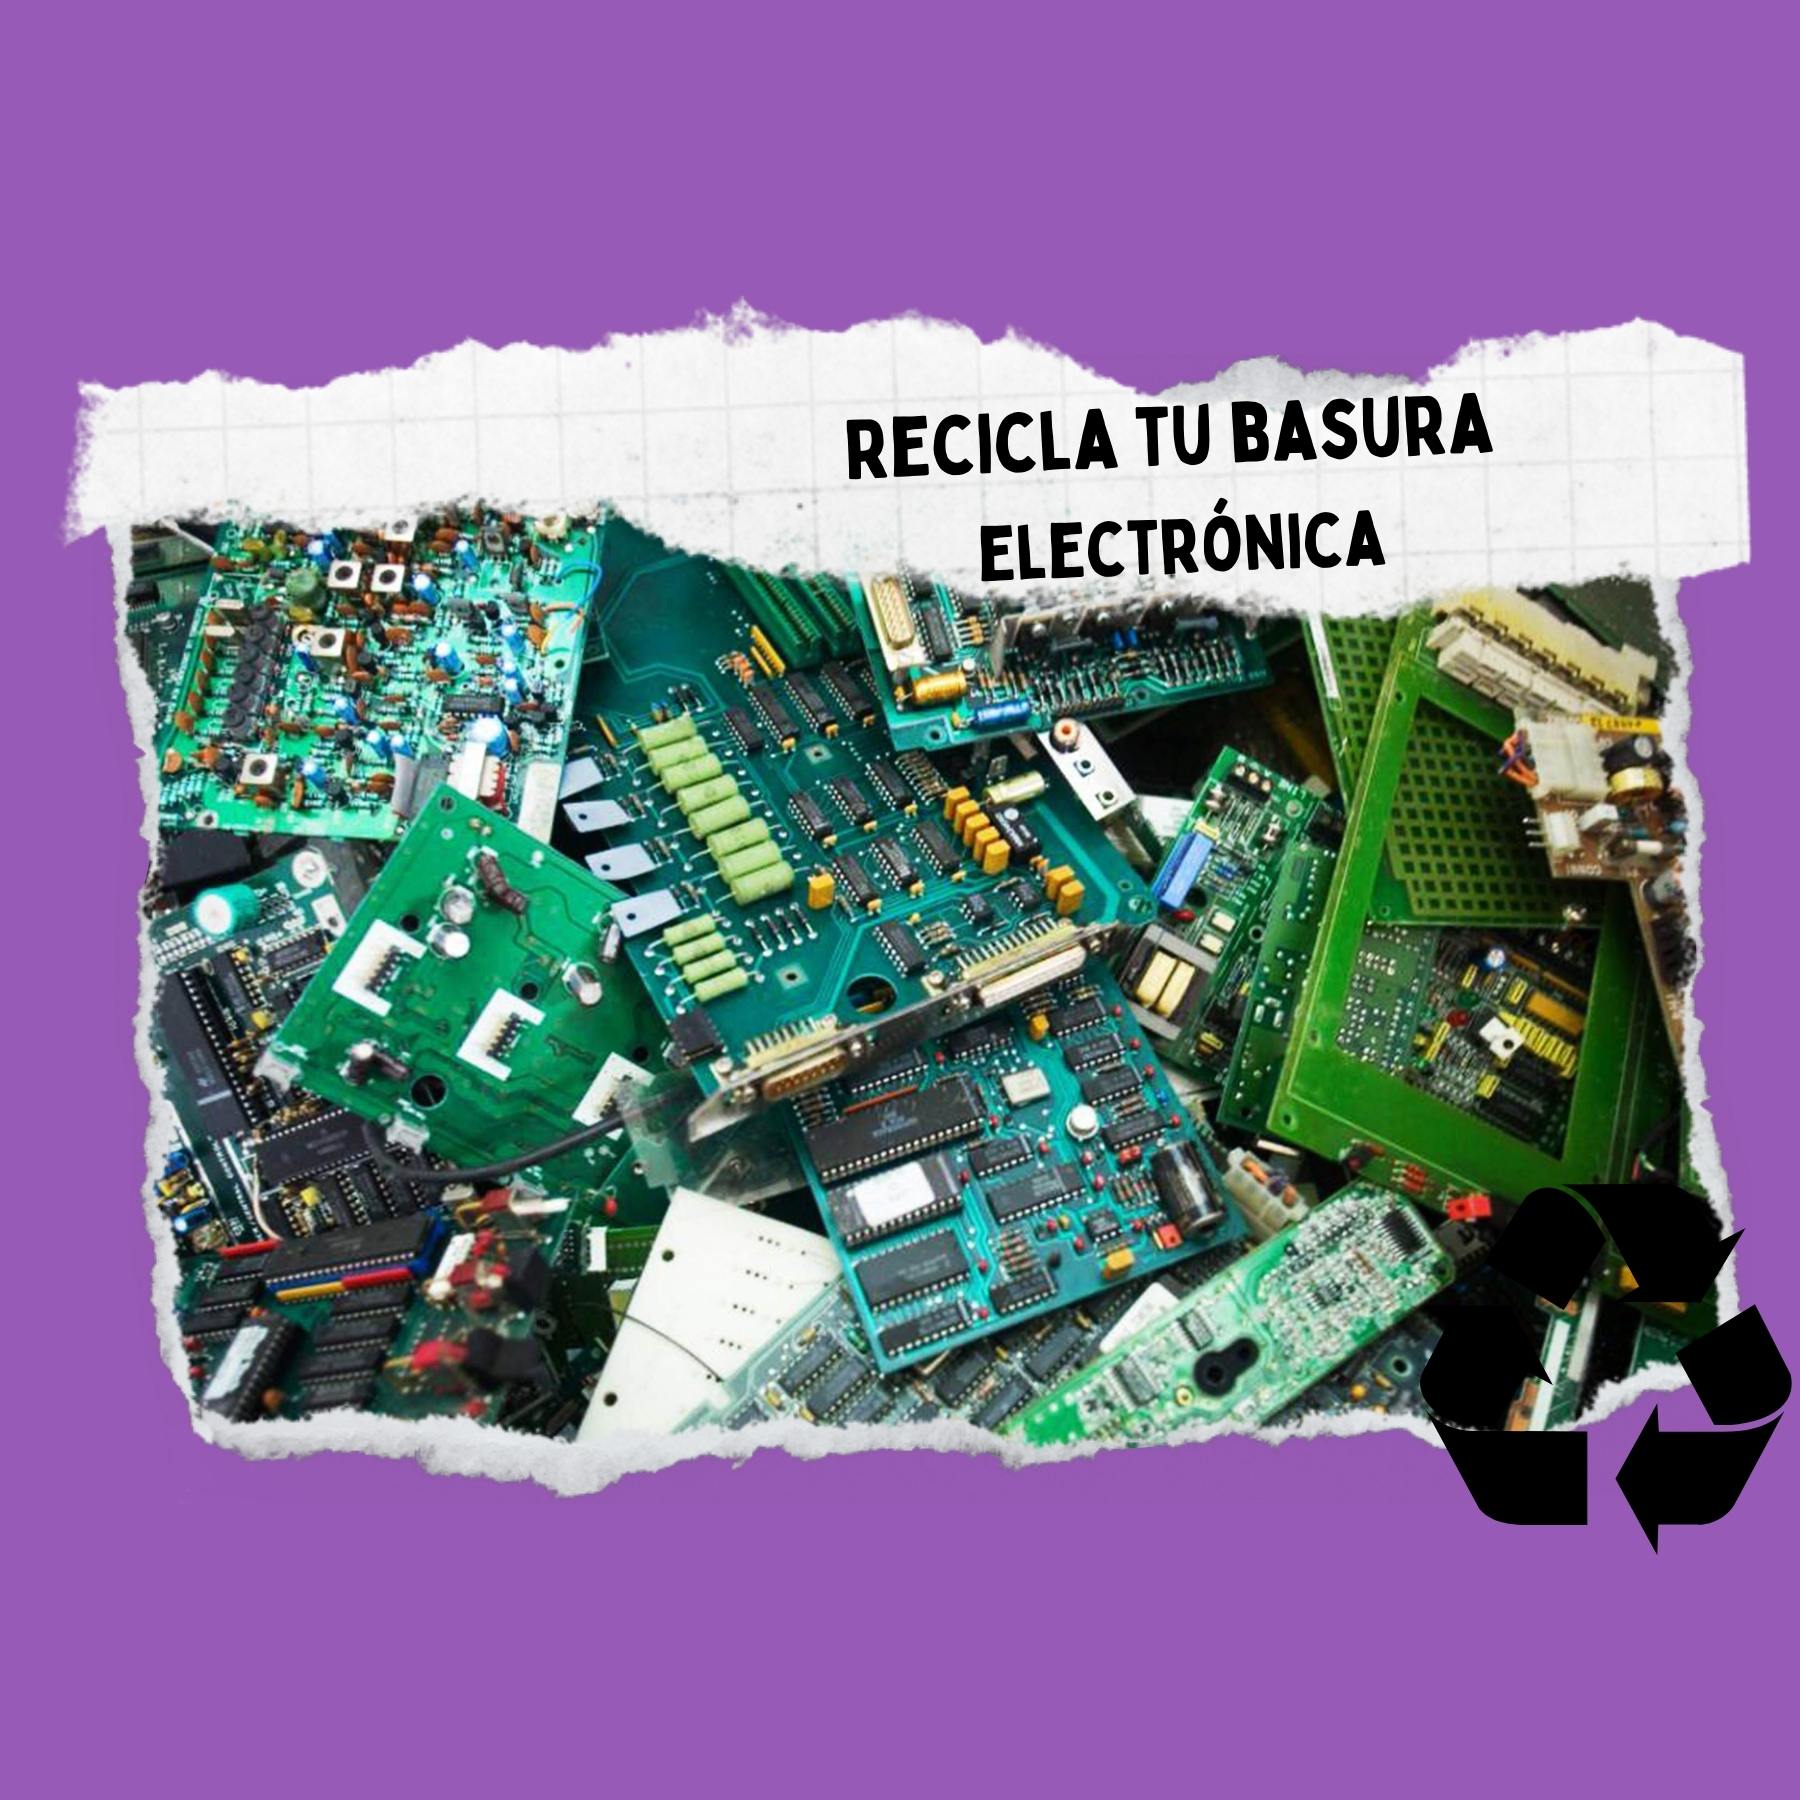 lugares para reciclar aparatos electrónicos en Puebla